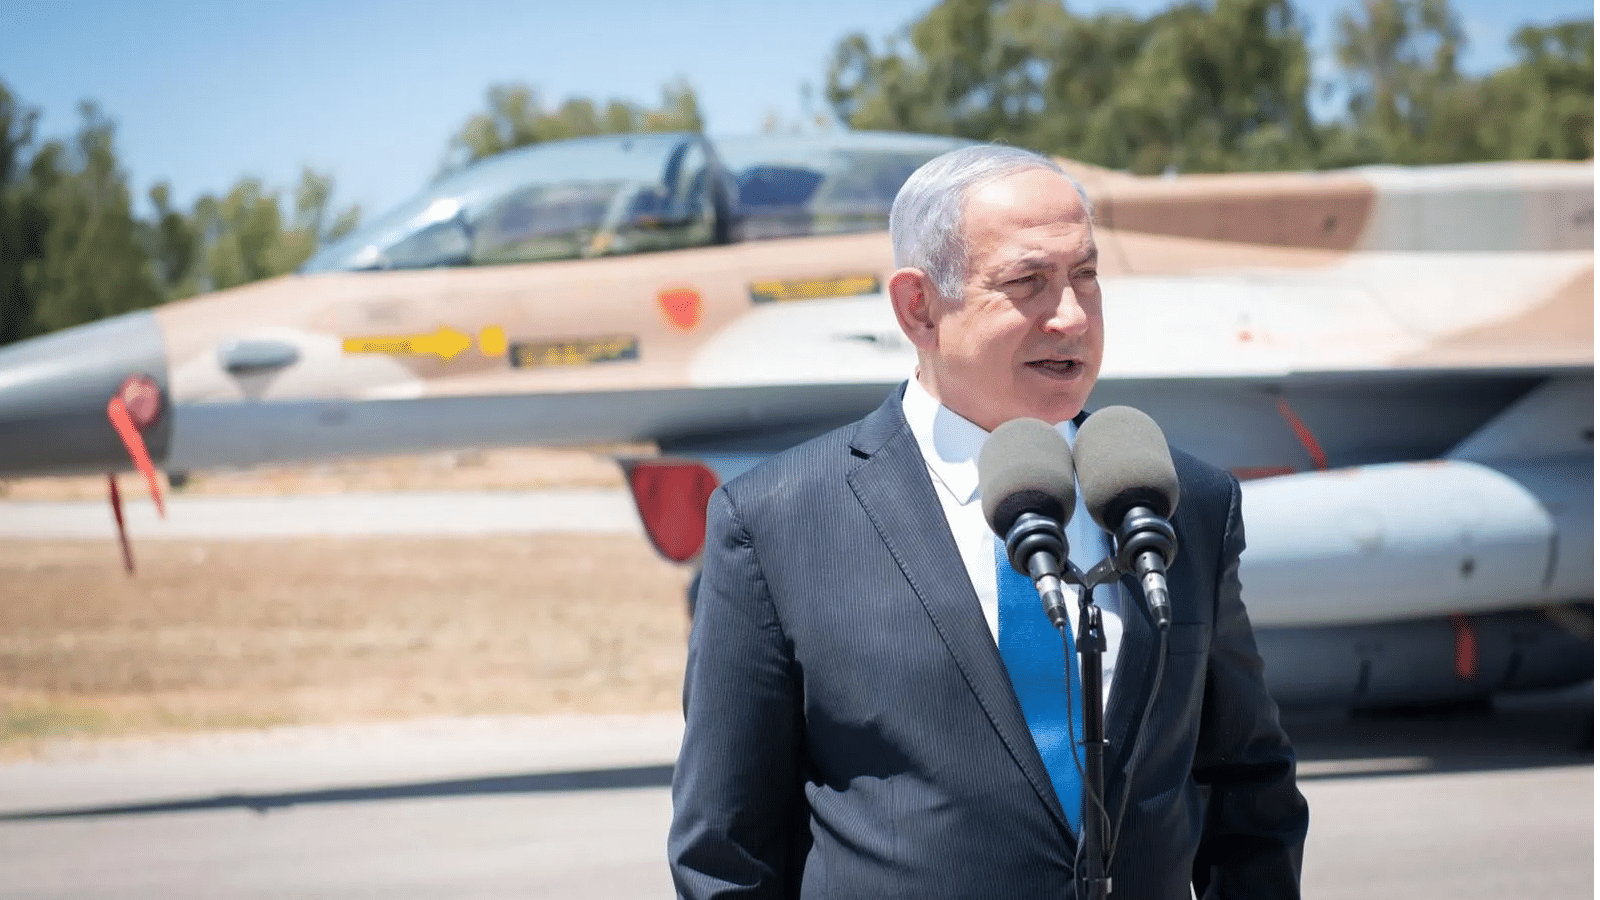 Benjamin Netanyahu leads following Israel vote: Exit polls